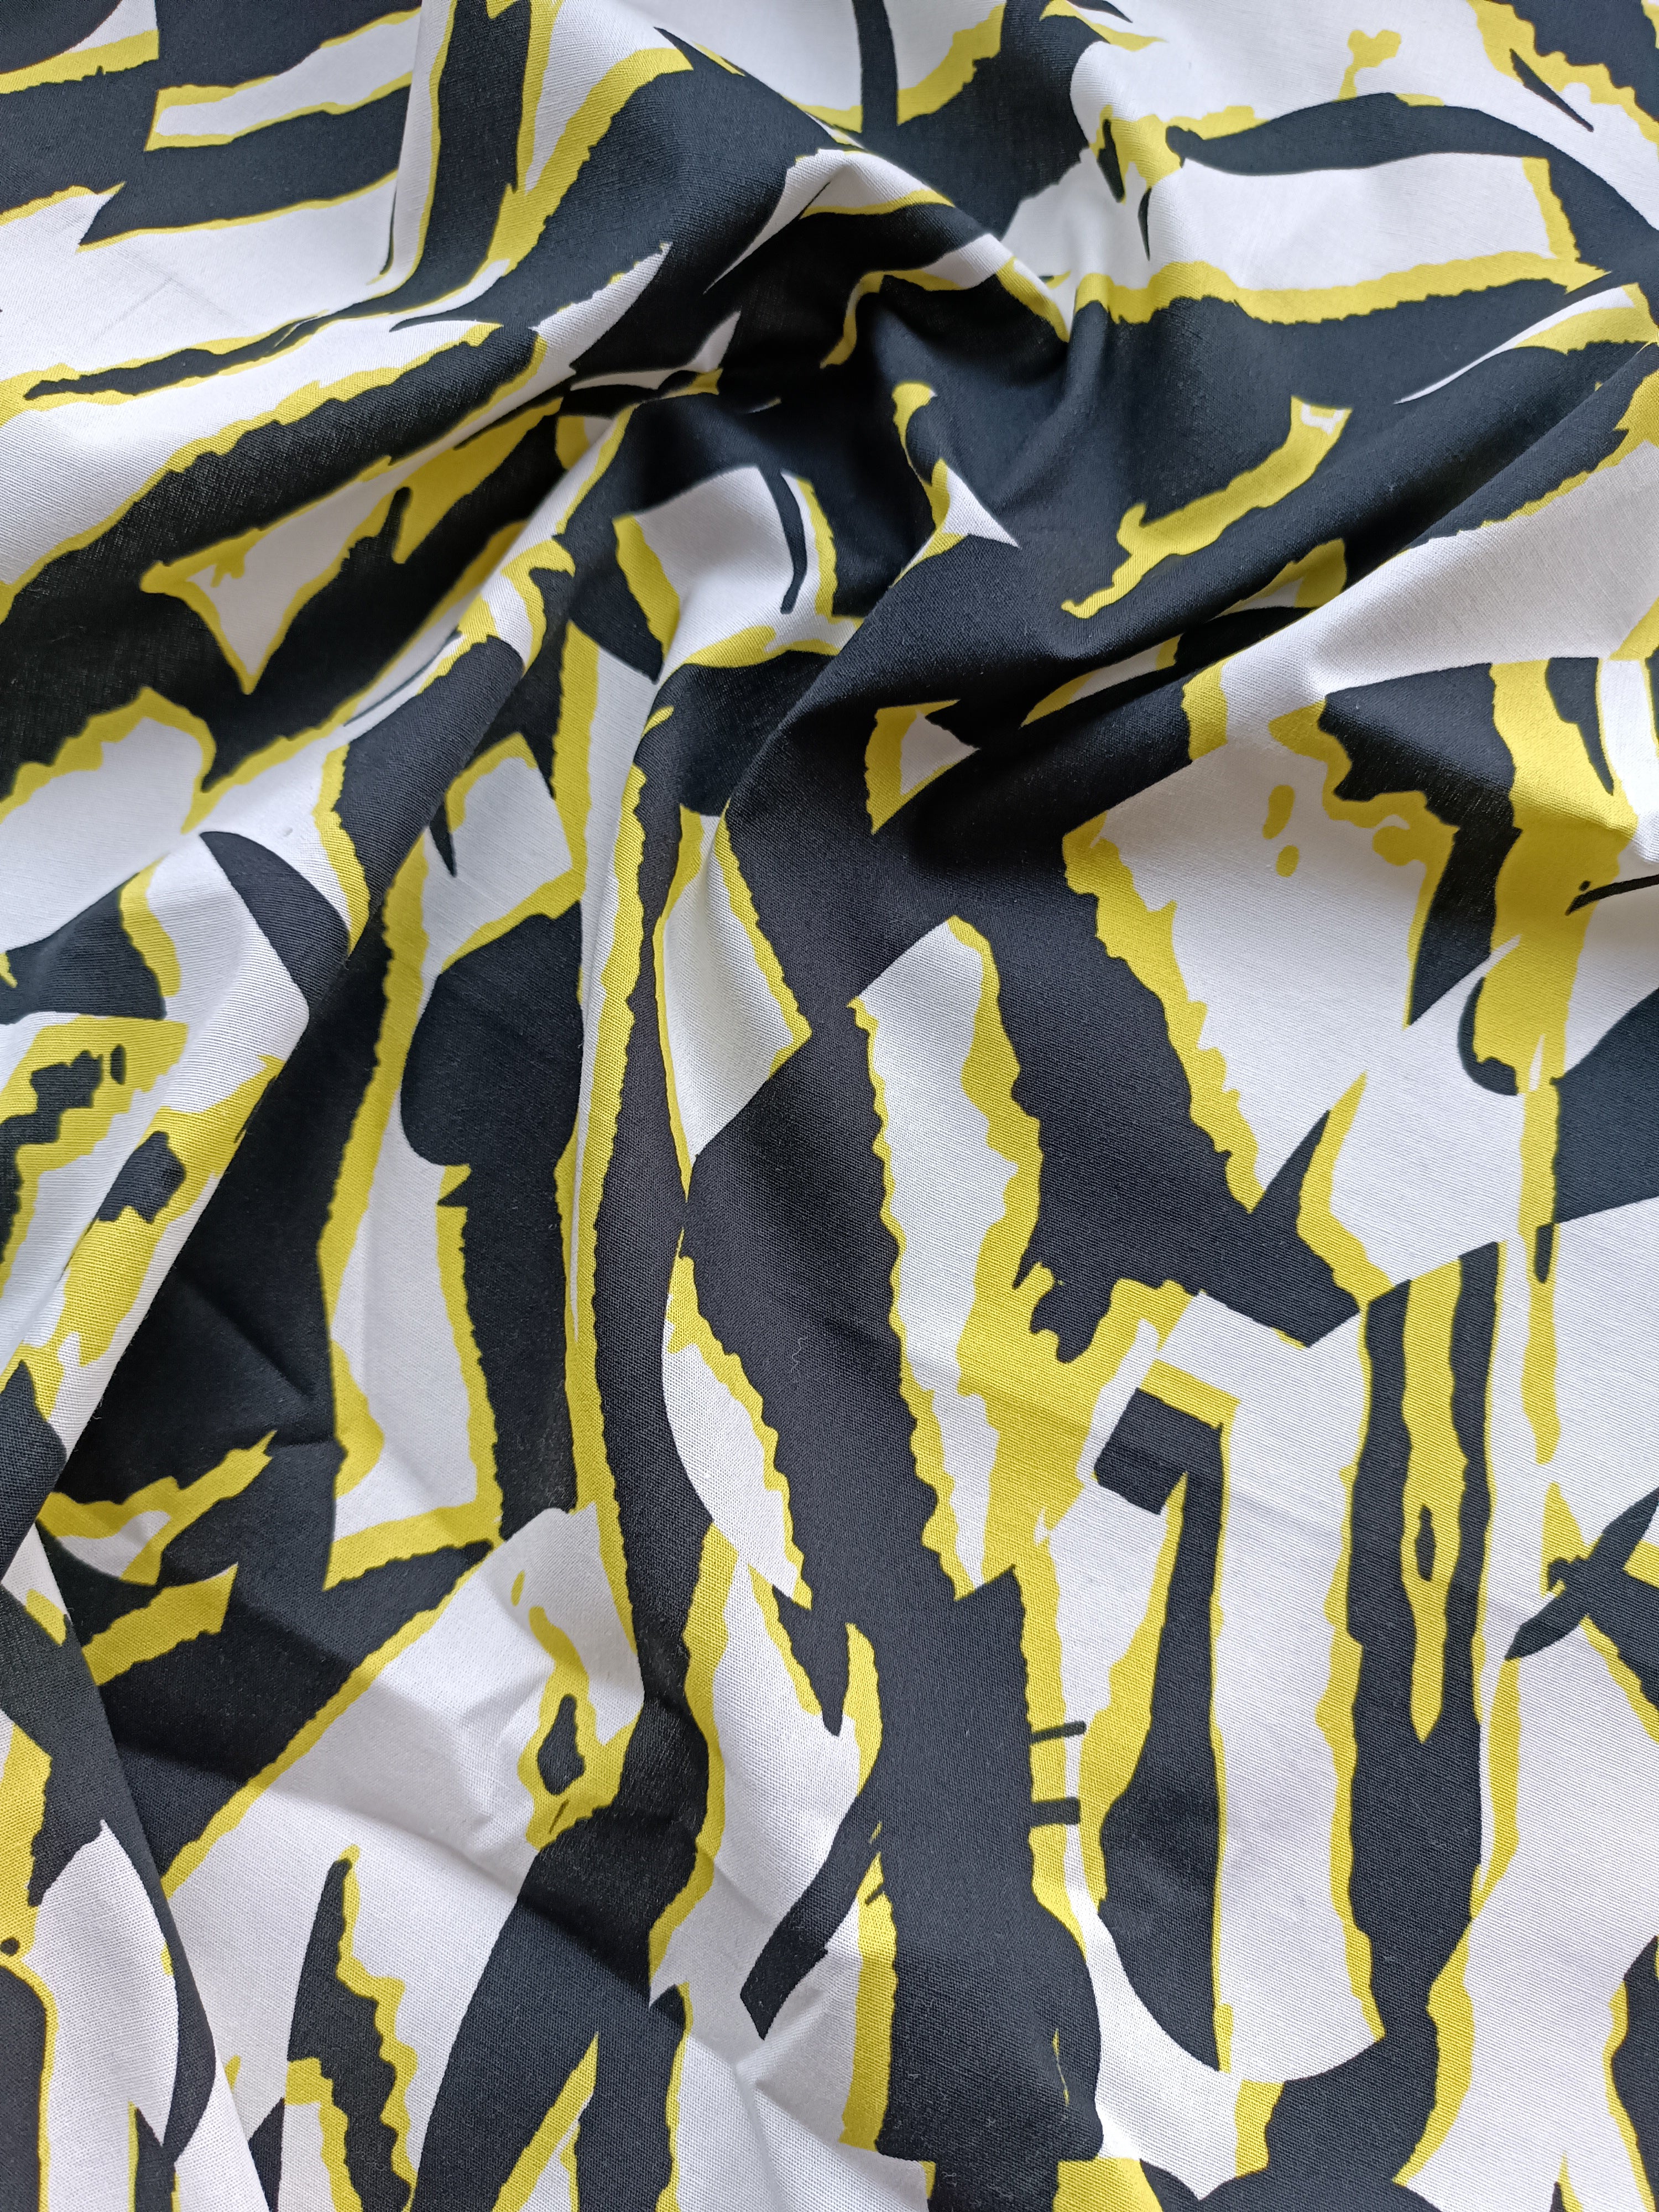 No. 684 Baumwolle mit abstraktem Print gelb schwarz